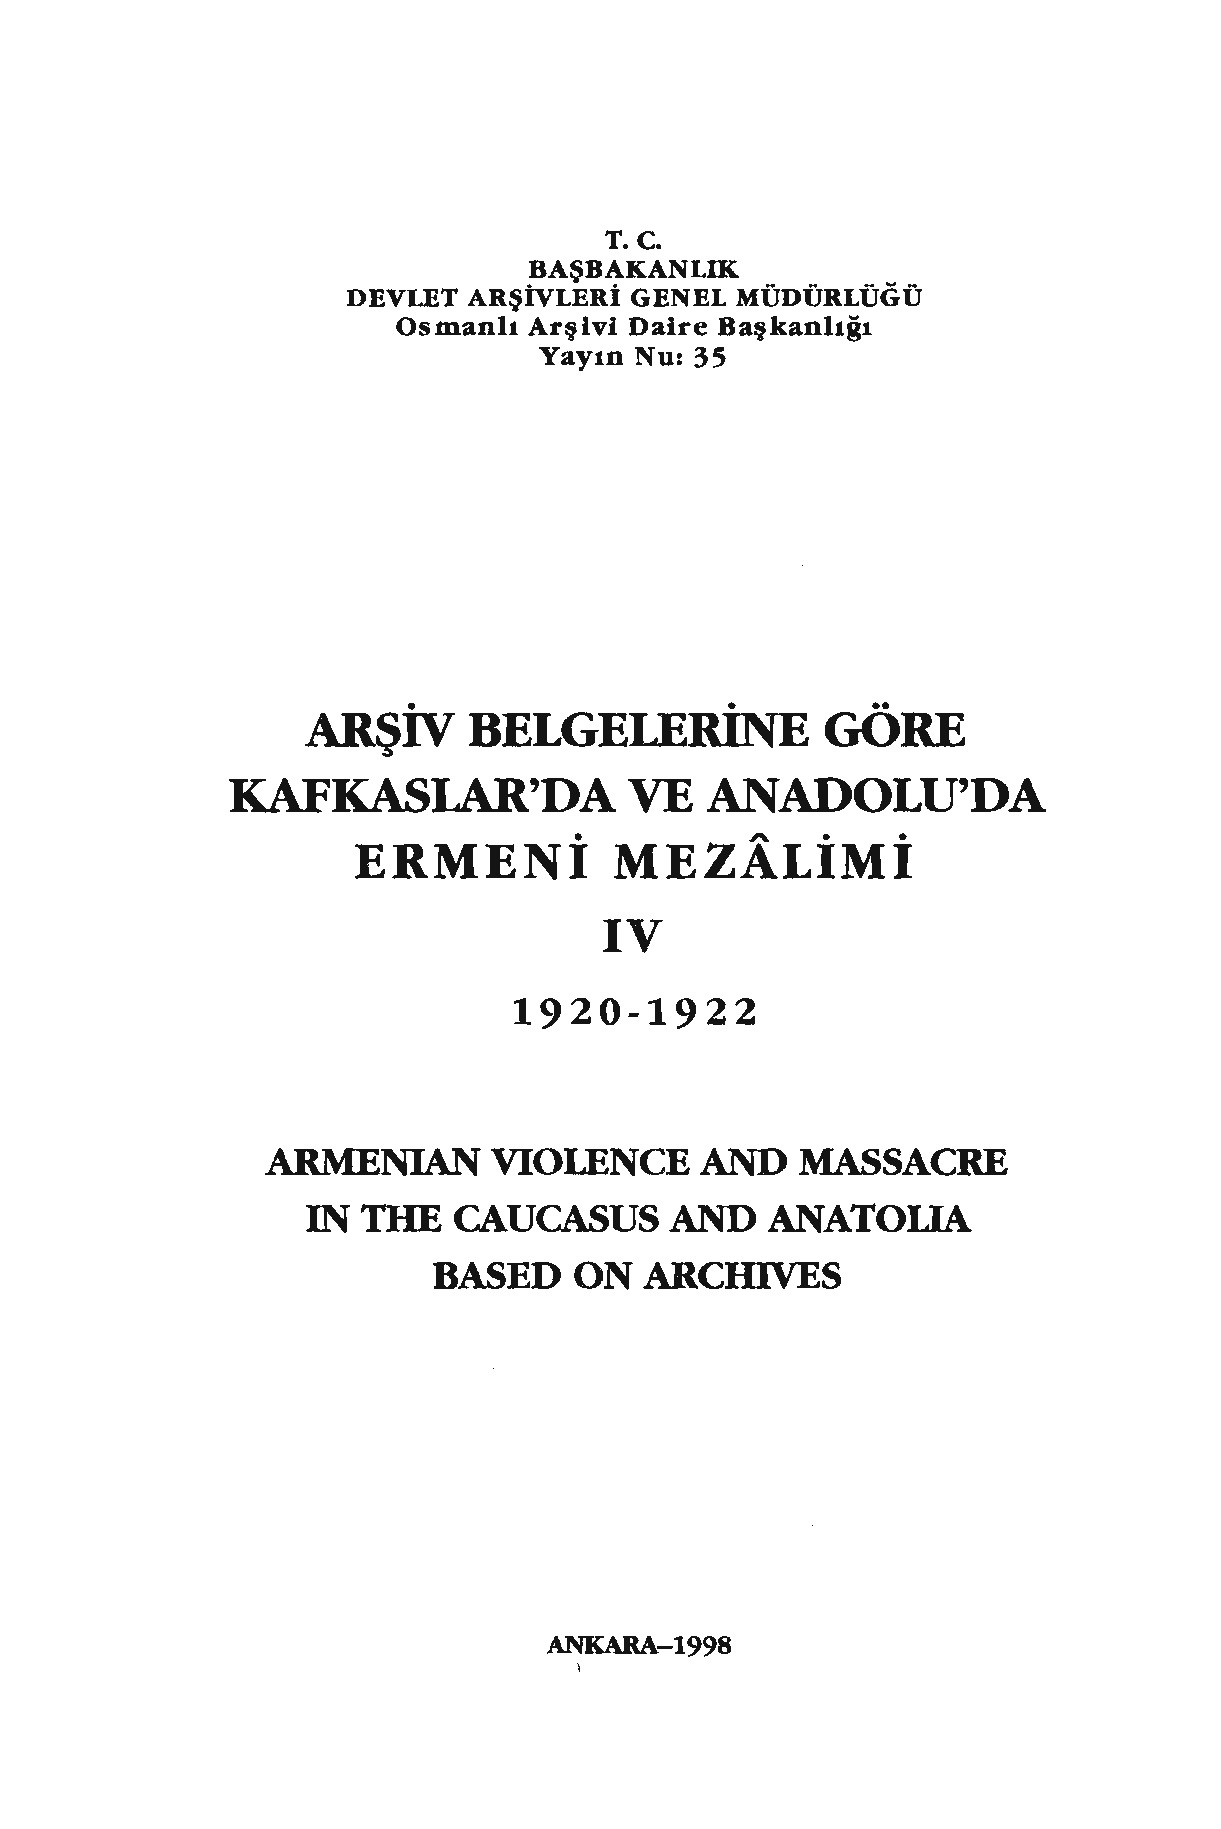 Arşiv Belgelerine Göre-4-Qafqazlarda Ve Anadoluda Ermeni Mezalimi-1920-1922-T. C.Bashbakanlik-1998-367s